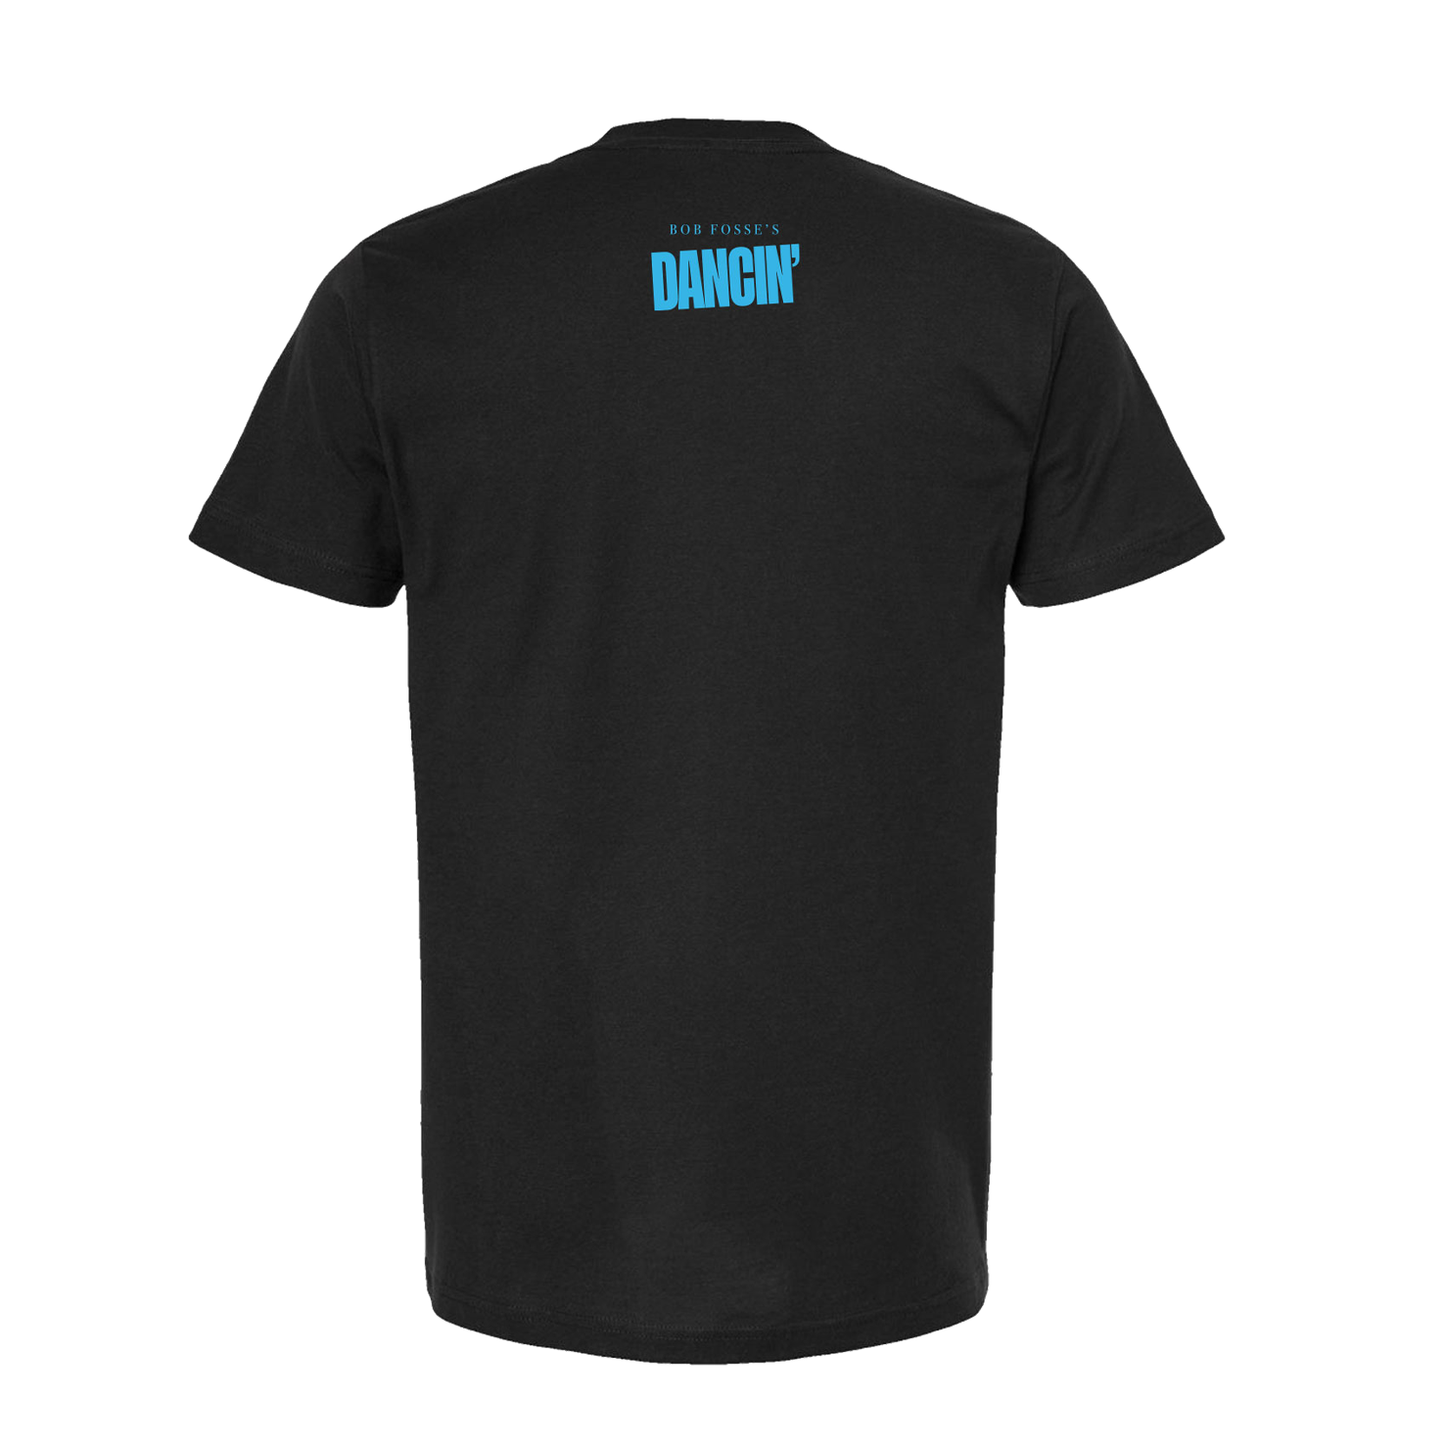 Bob Fosse's Dancin' Logo Style T-Shirt